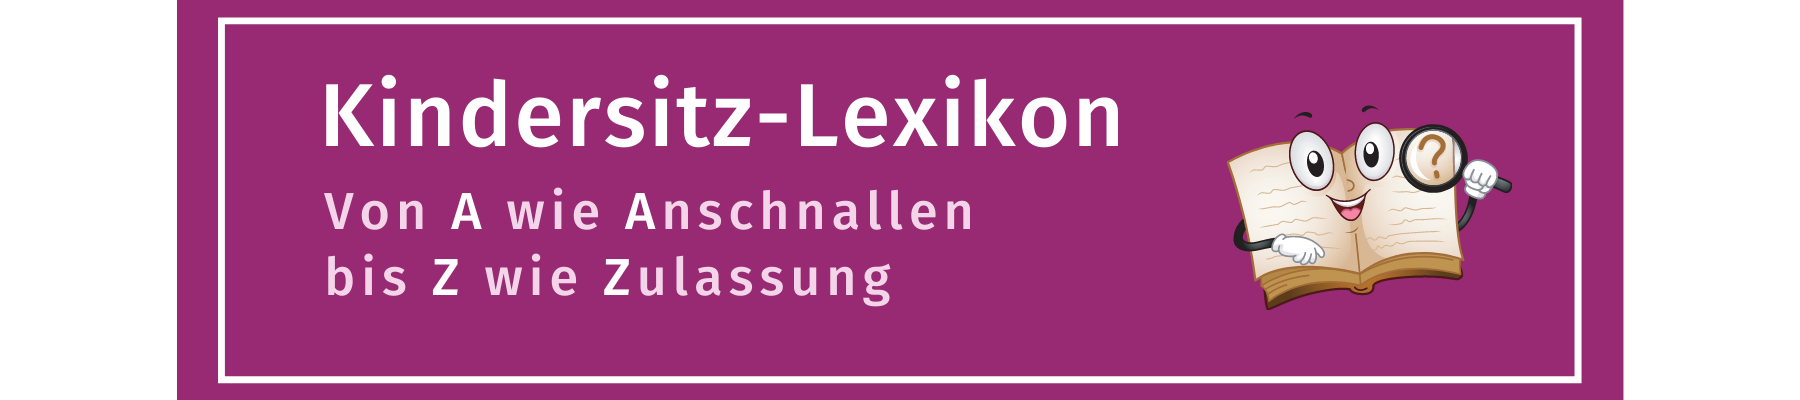 Lexikon Banner